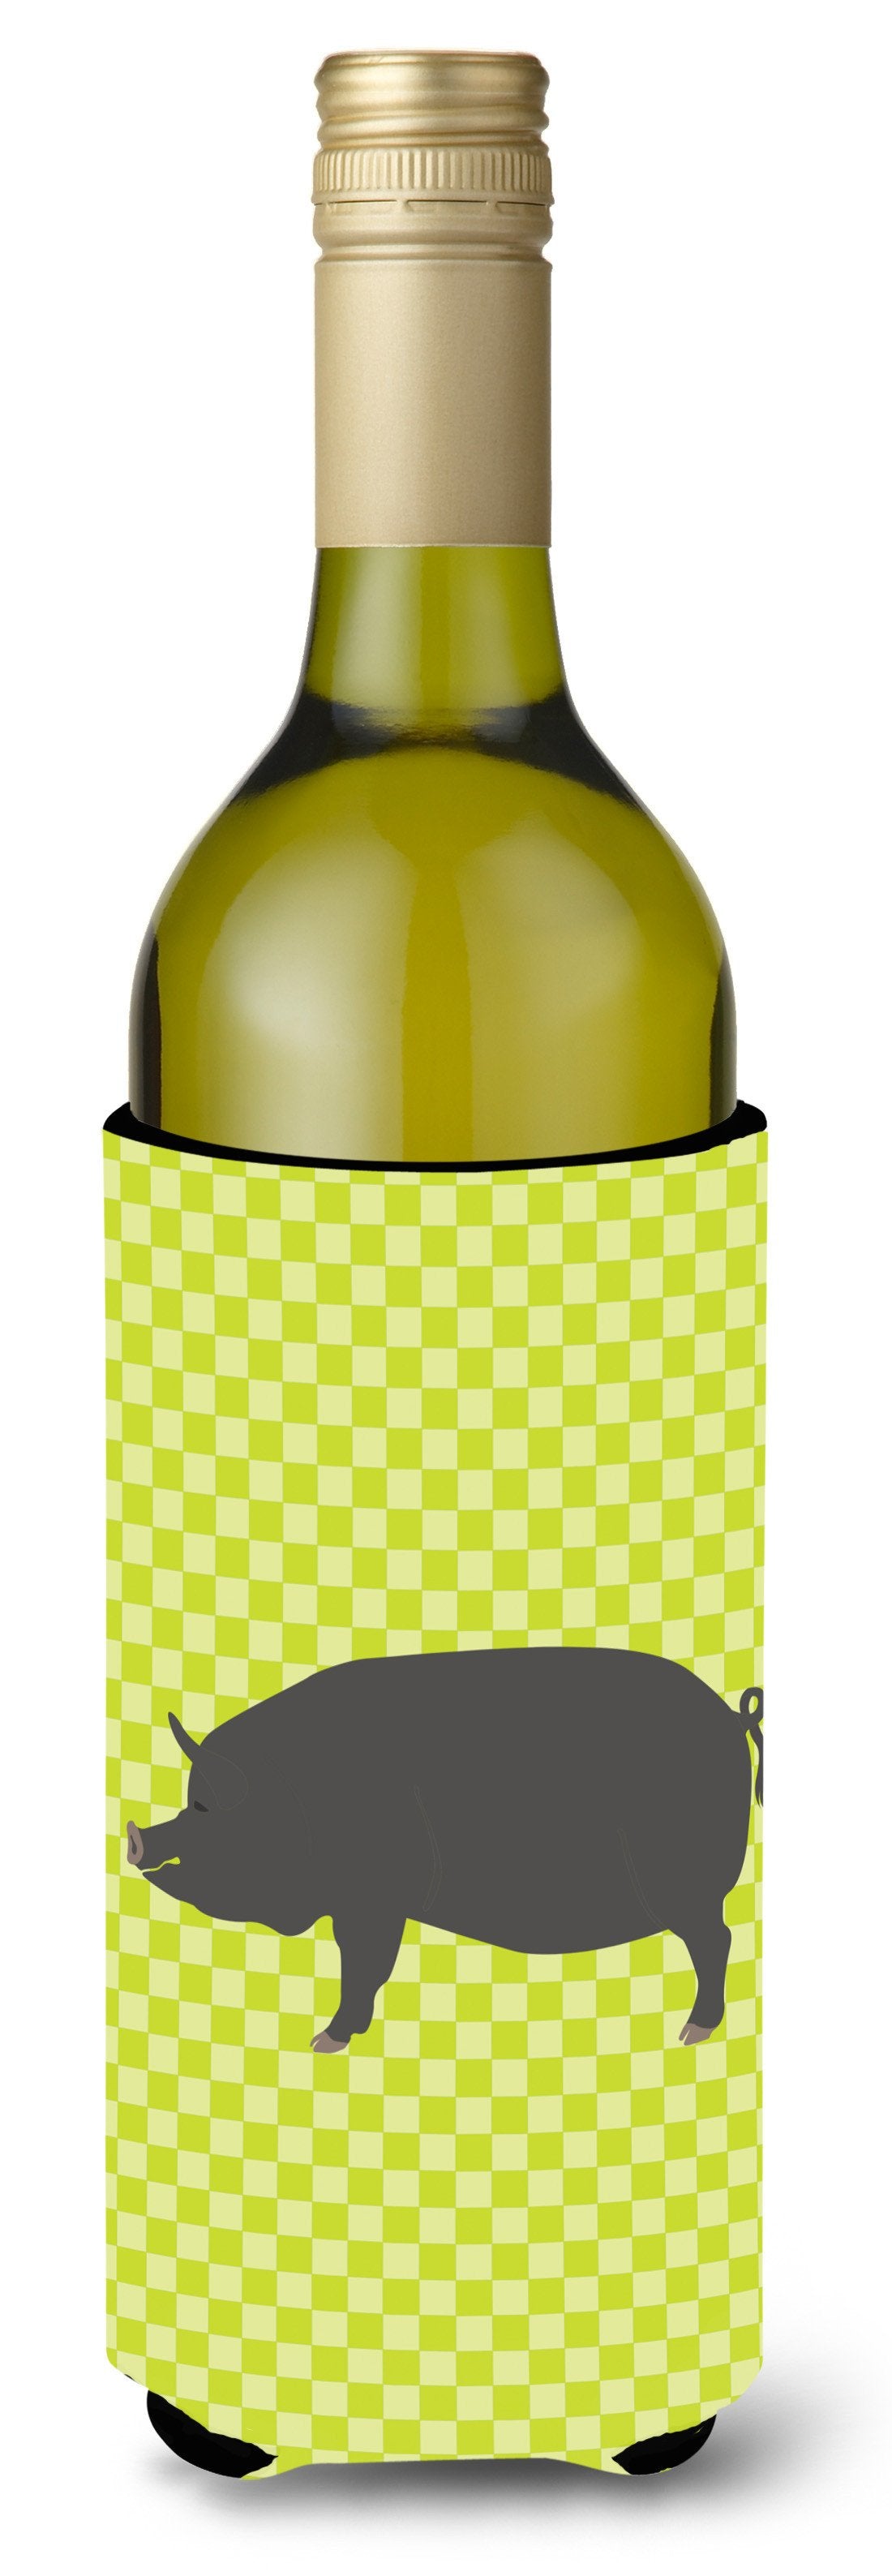 Berkshire Pig Green Wine Bottle Beverge Insulator Hugger BB7759LITERK by Caroline's Treasures